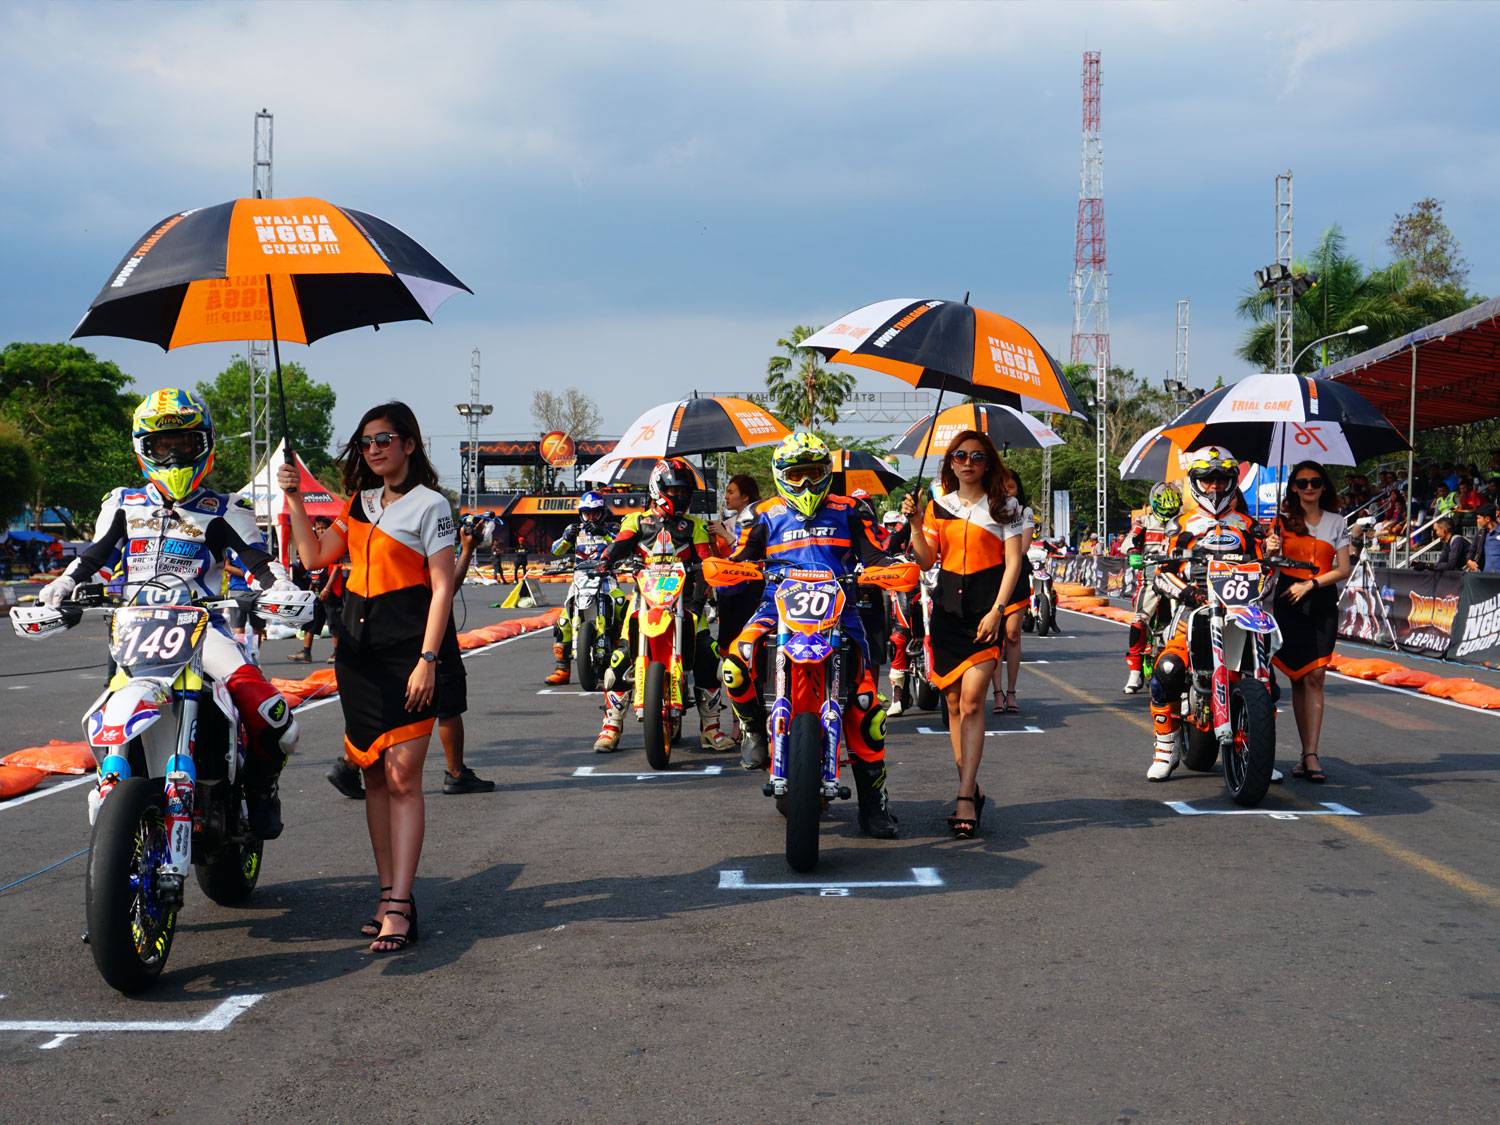 Umbrella girls menjadi pemanis ditengah teriknya panas matahari saat rider berada di grid start